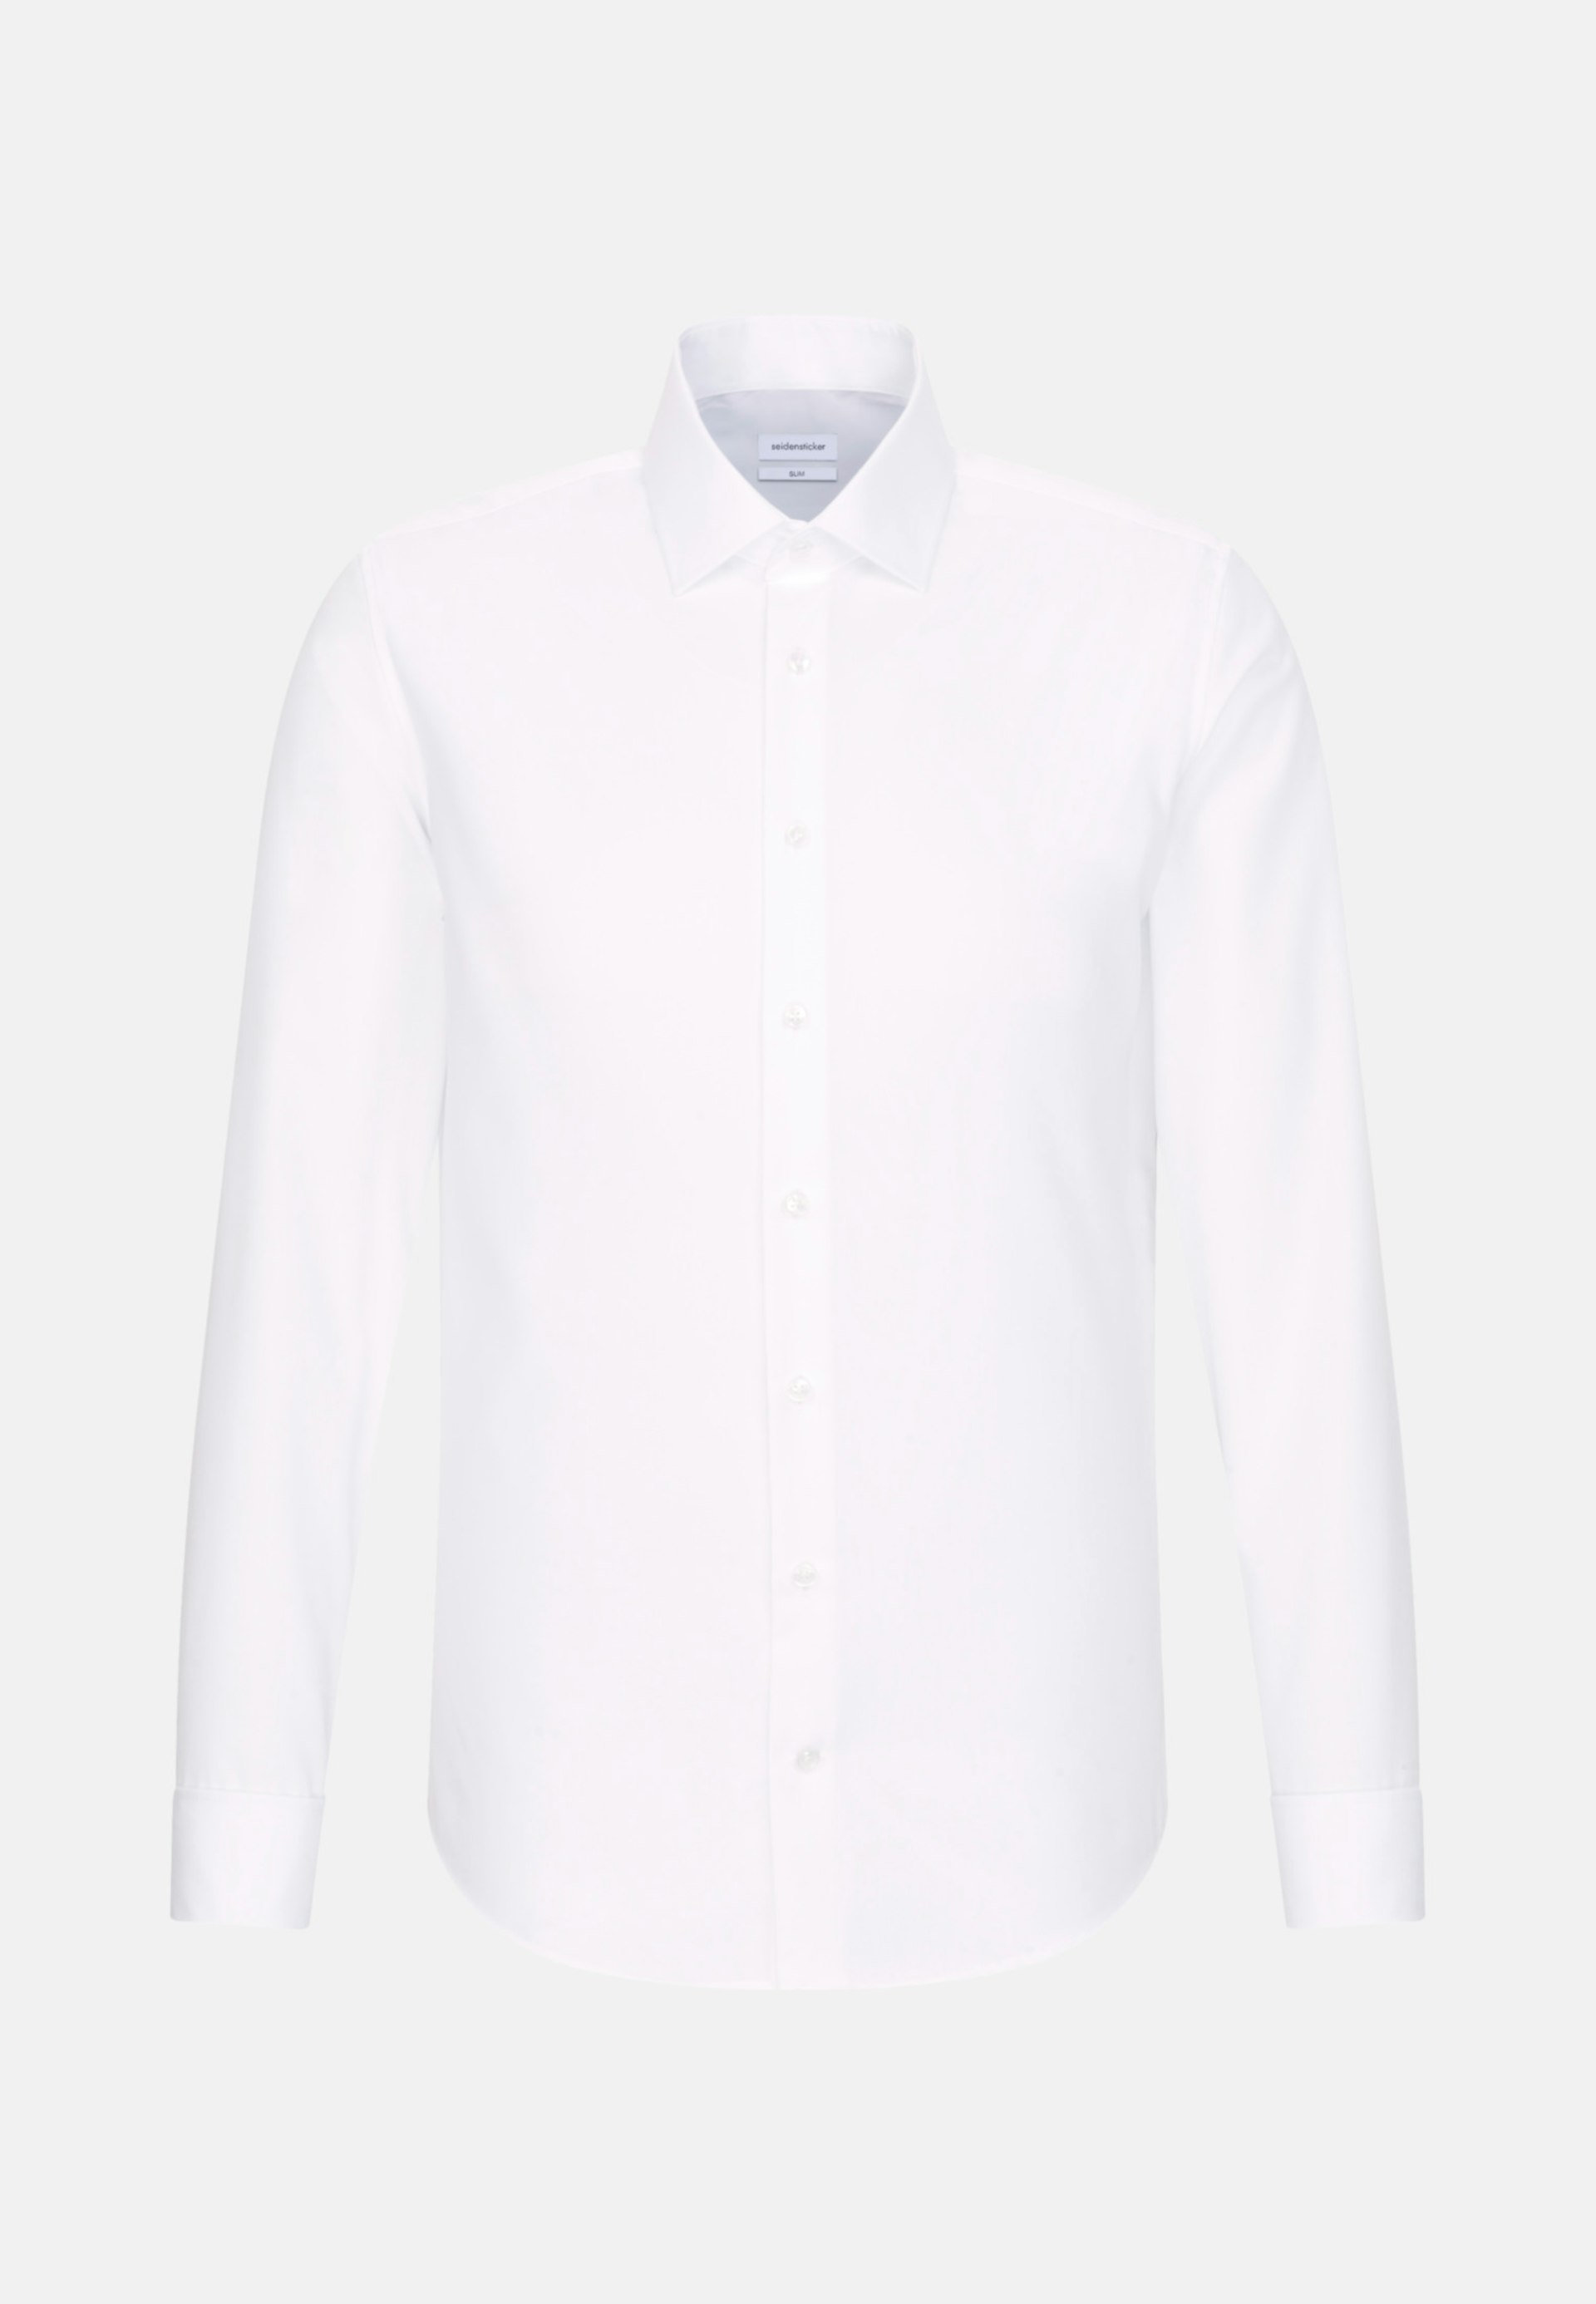 Danskin Now, Tops, Danskin Now Semifitted White Long Sleeve Shirt M White